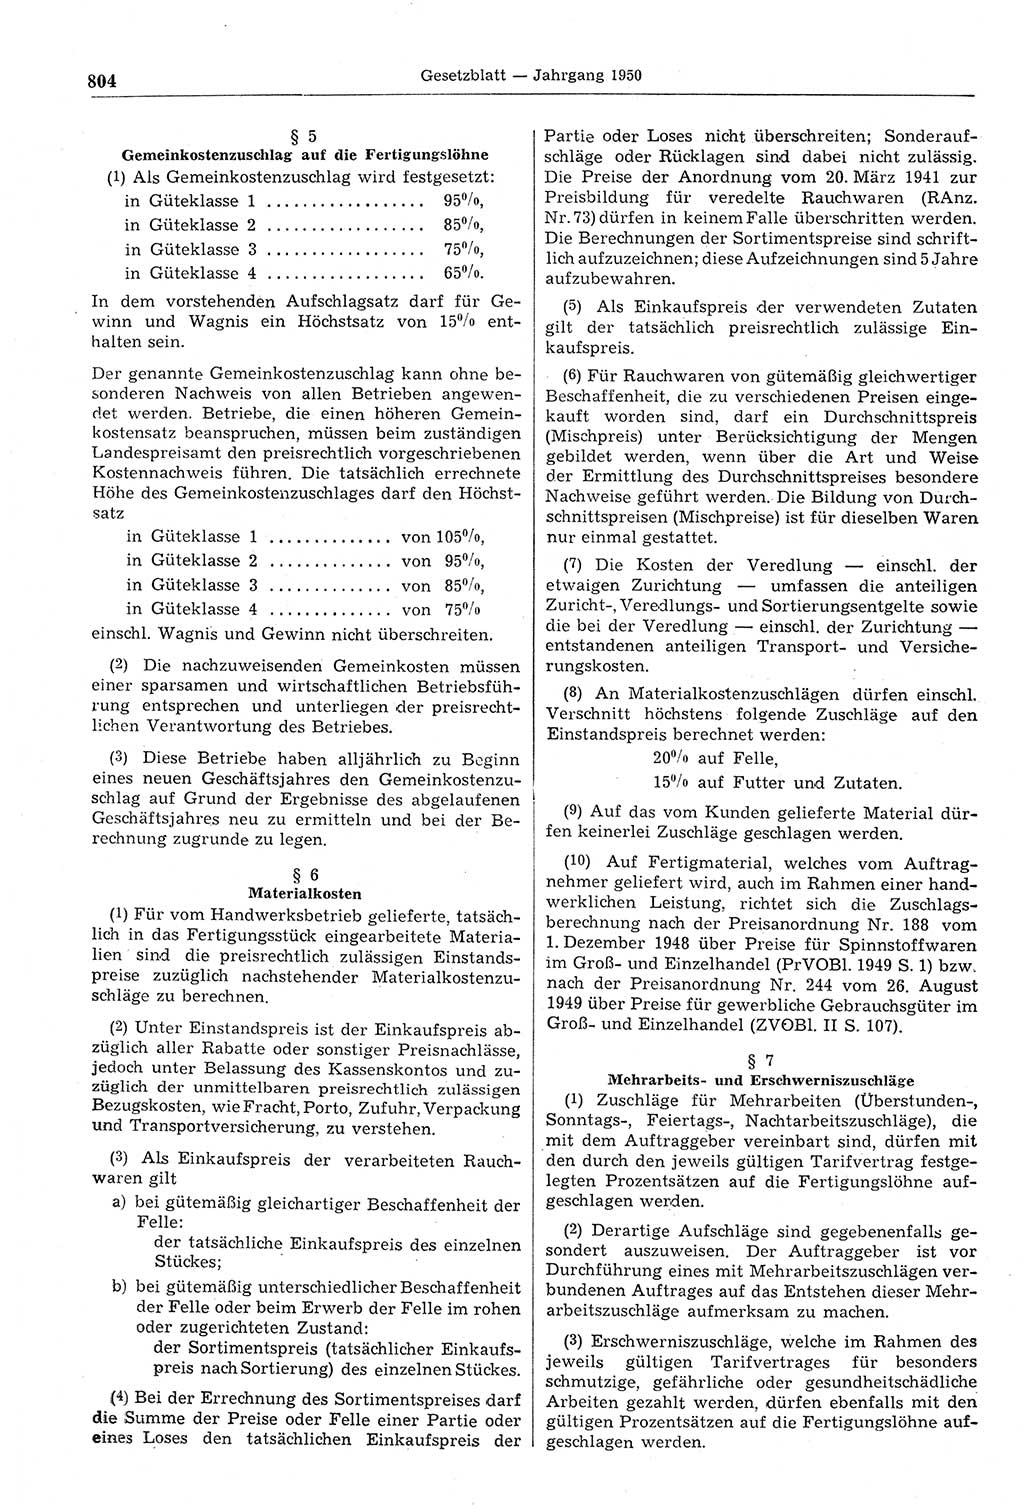 Gesetzblatt (GBl.) der Deutschen Demokratischen Republik (DDR) 1950, Seite 804 (GBl. DDR 1950, S. 804)